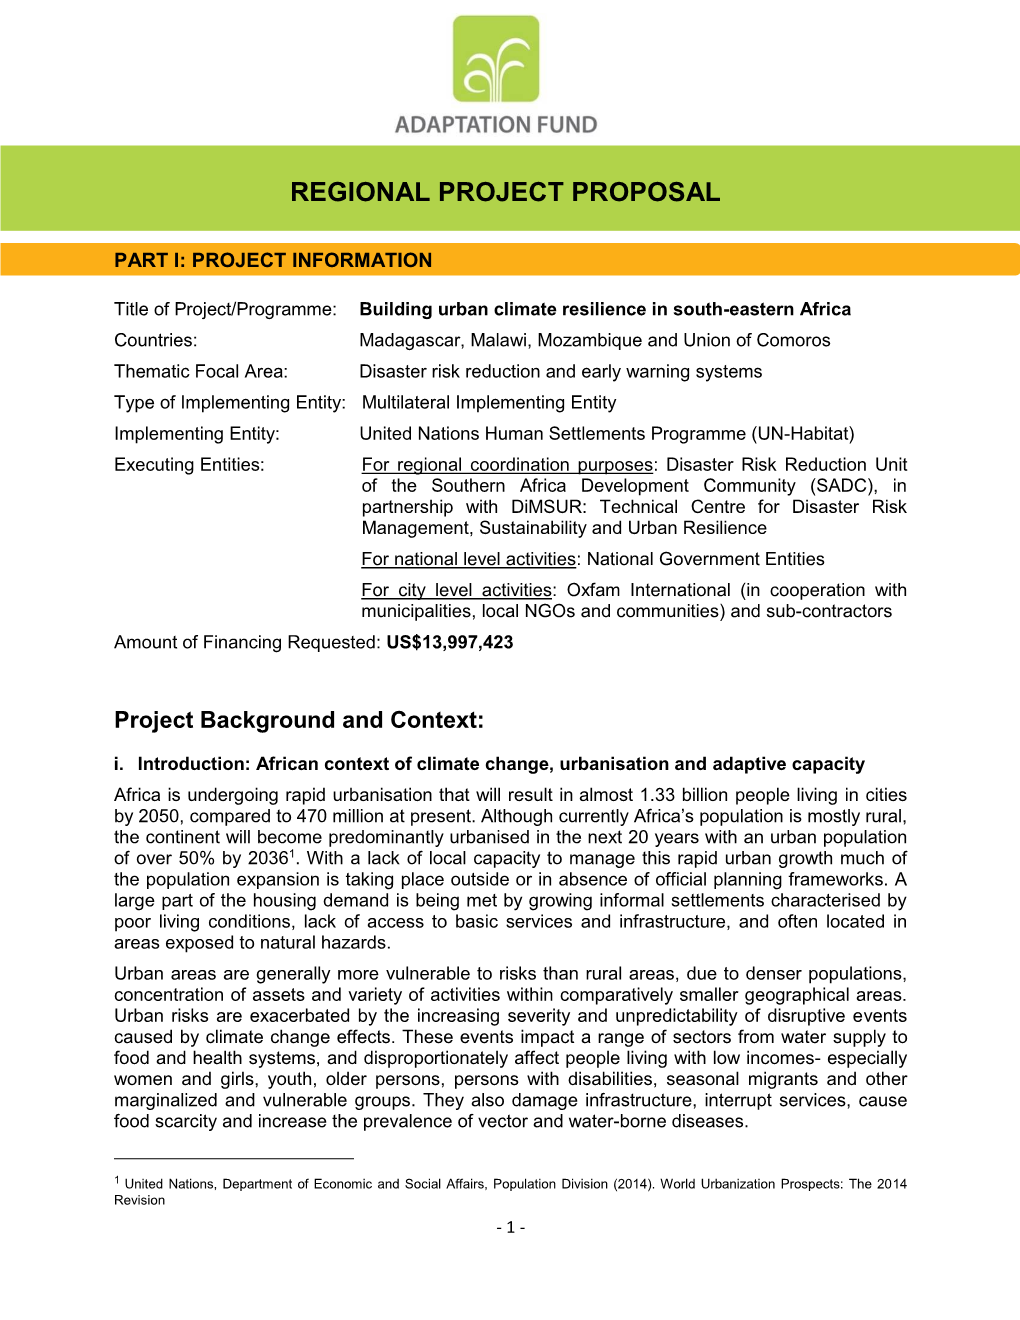 Regional Project Proposal